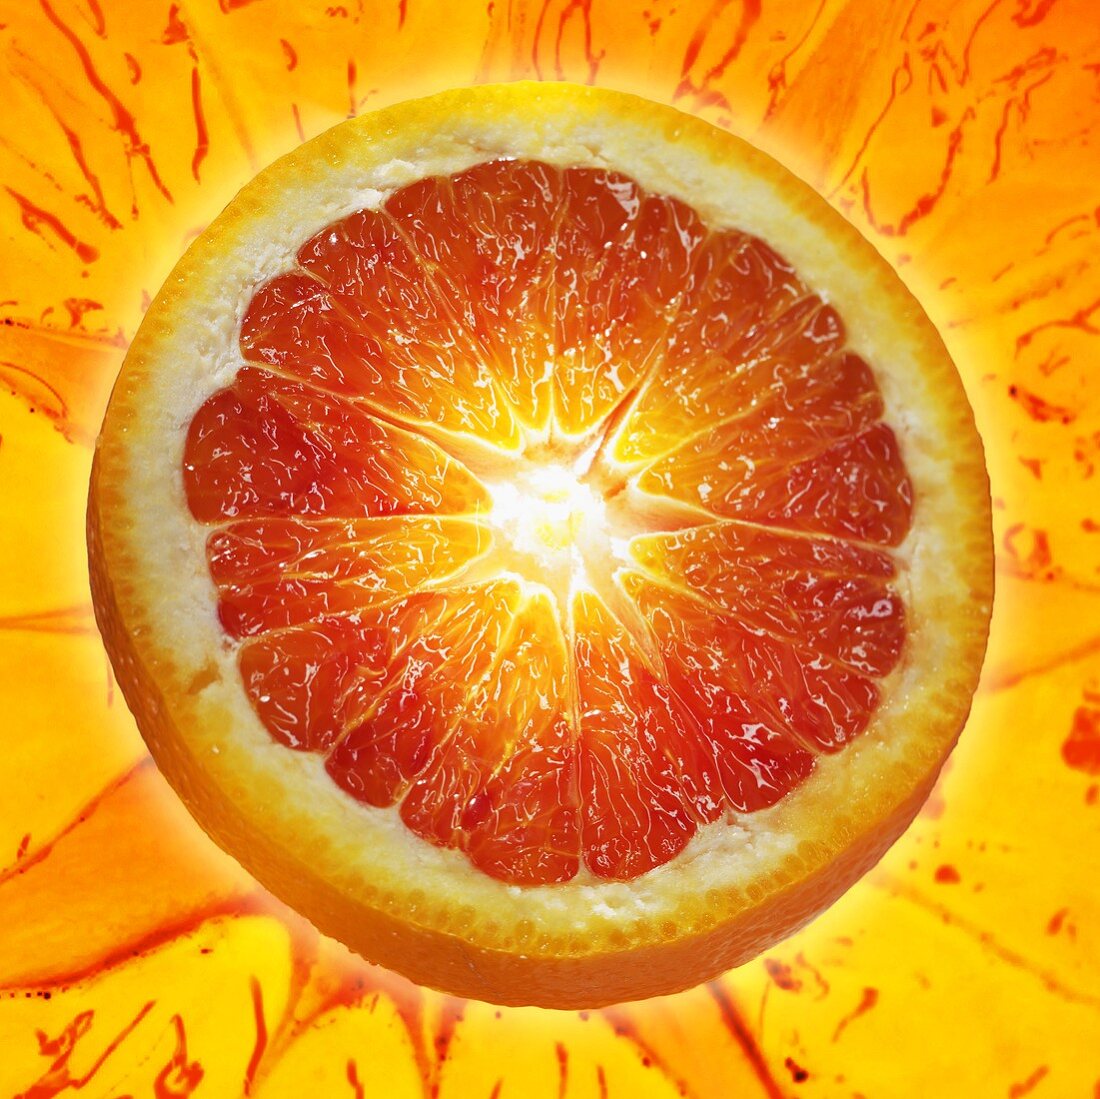 A slice of blood orange